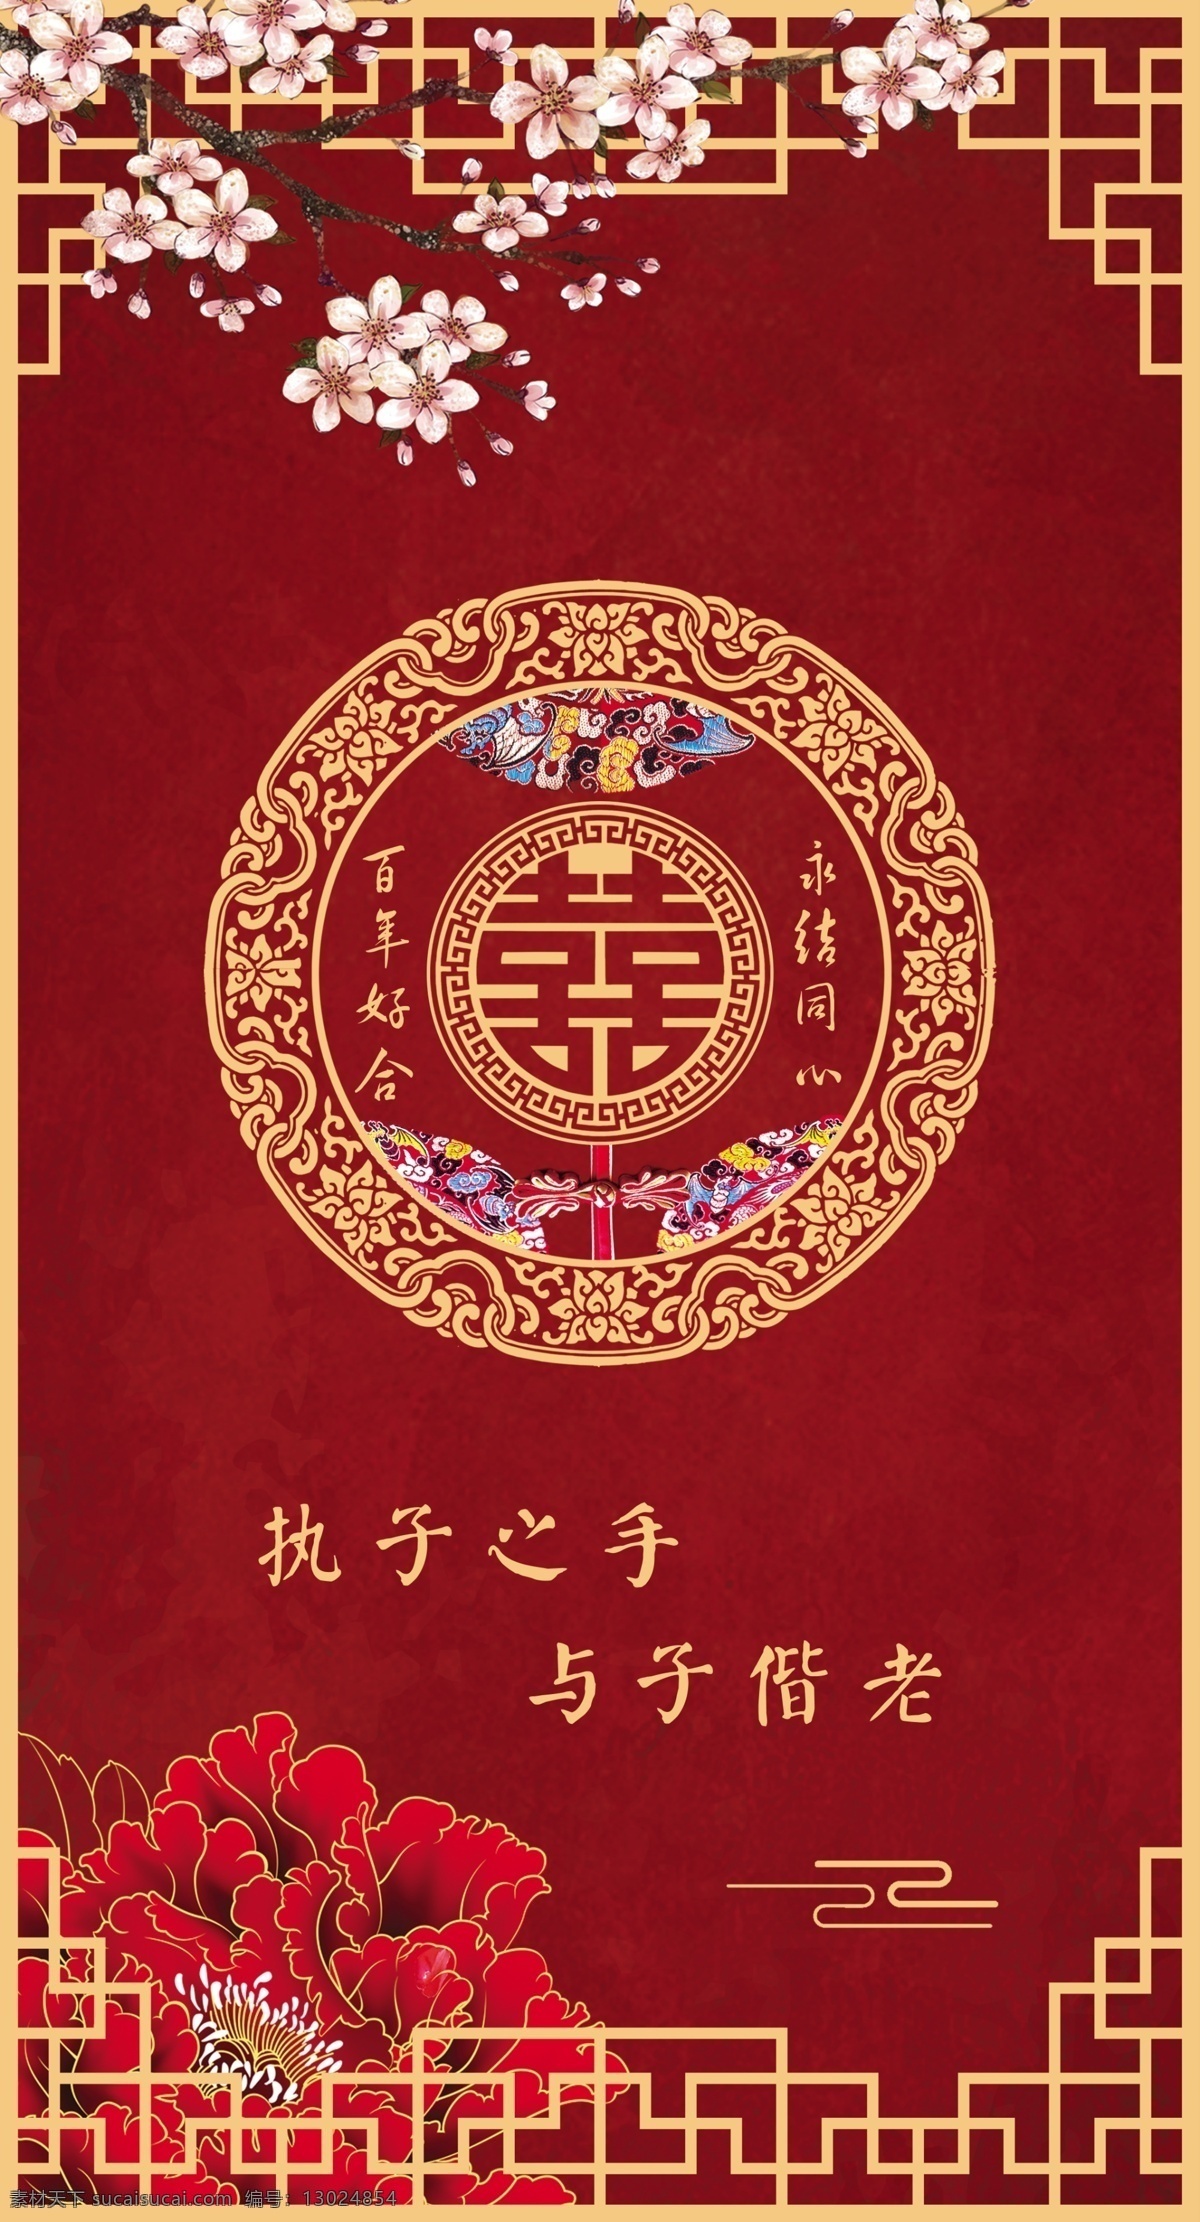 中式 婚礼 中式婚礼 中国风 中国婚礼 红色婚礼 红色主题 主题婚礼 婚庆背景 分层